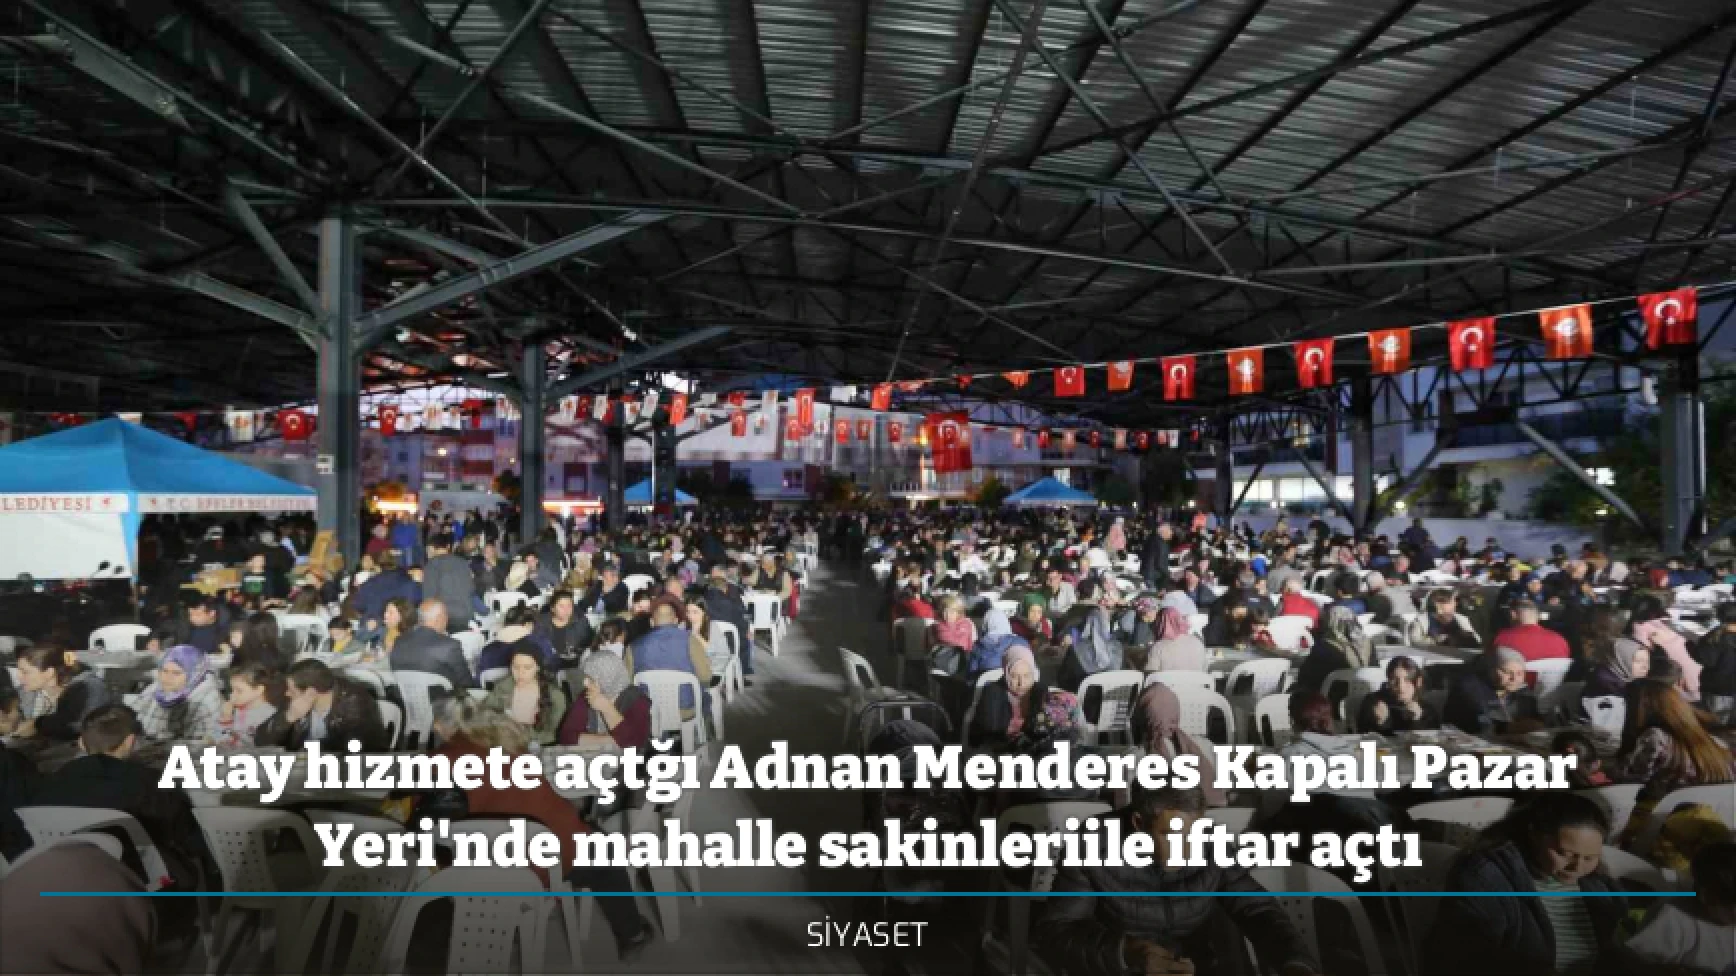 Atay hizmete açtğı Adnan Menderes Kapalı Pazar Yeri'nde mahalle sakinleriile iftar açtı